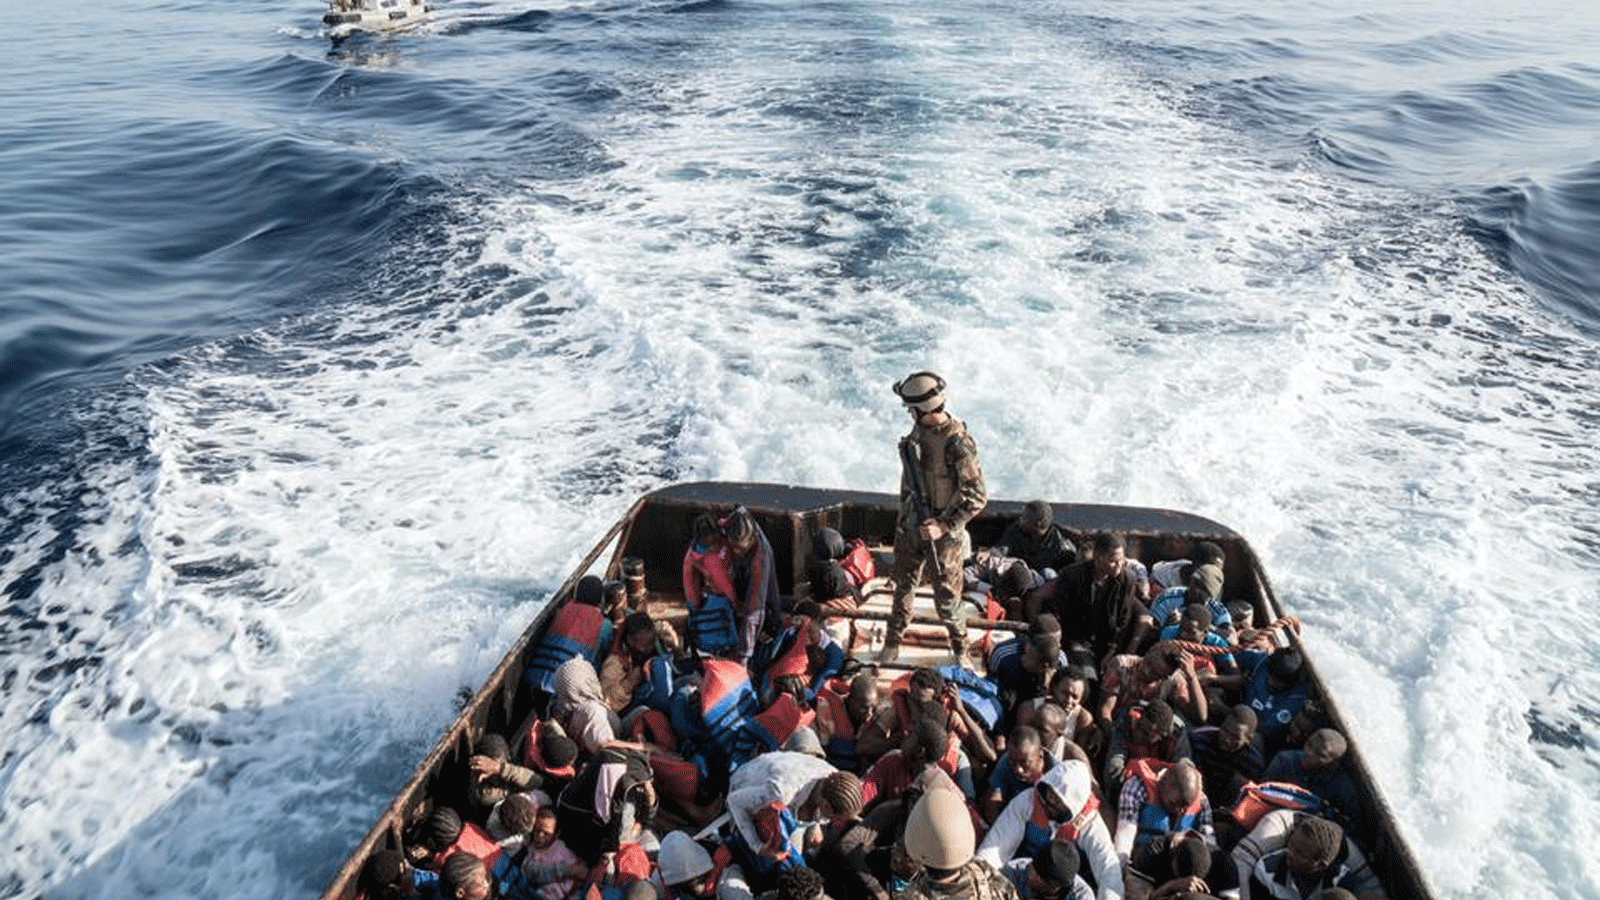 حرس السواحل الليبي على متن قارب أثناء إنقاذ 147 مهاجراً غير شرعي يحاولون الوصول إلى أوروبا قبالة بلدة الزاوية الساحلية، على بعد 45 كيلومتراً غرب العاصمة طرابلس.